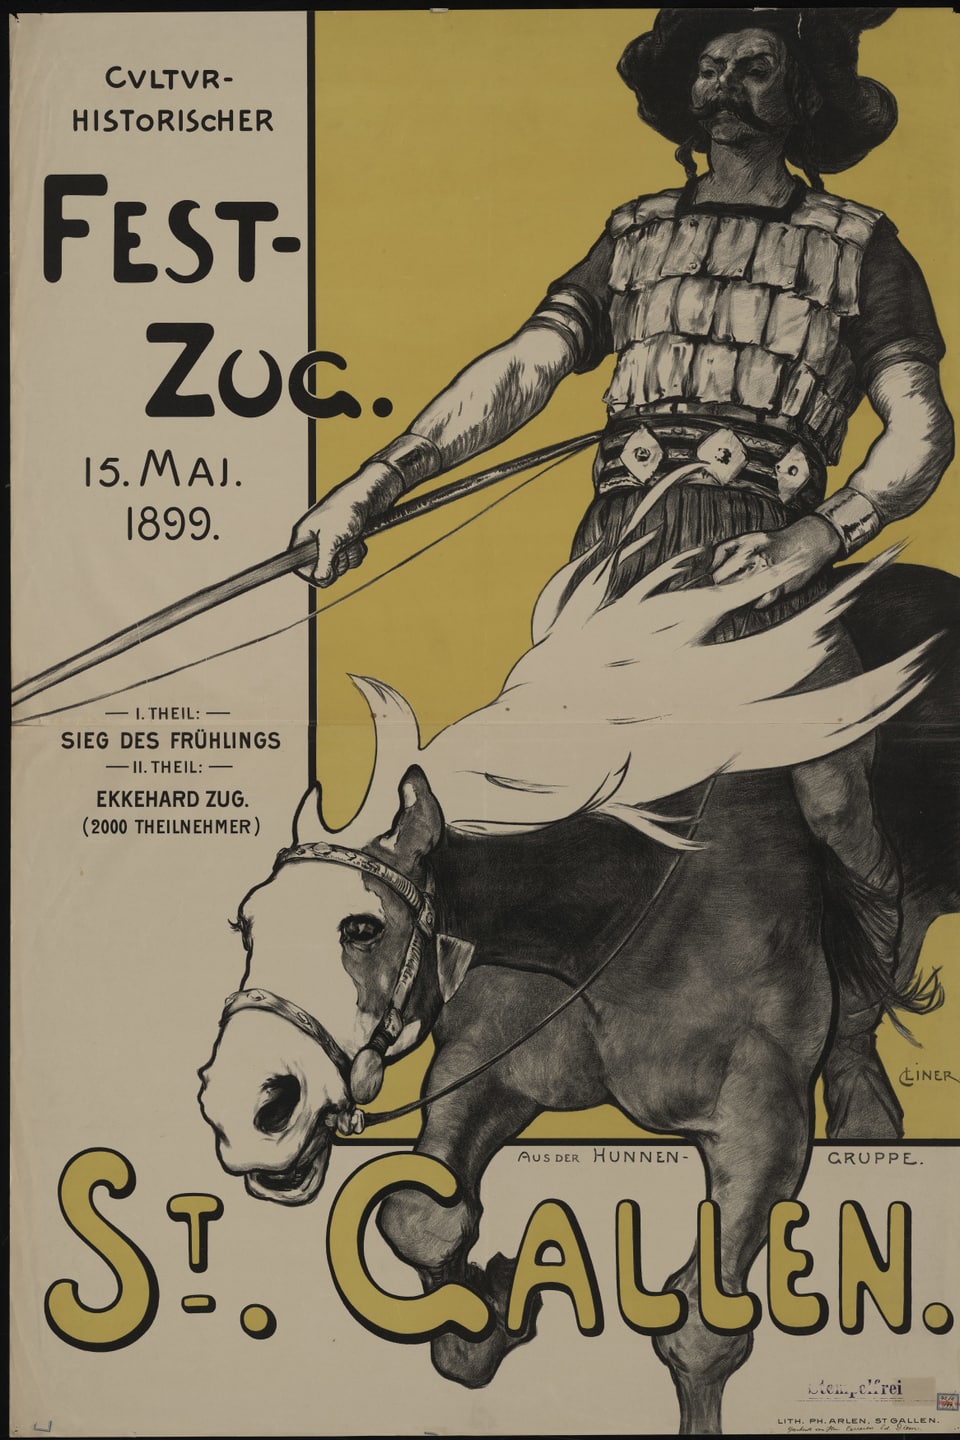 Culturhistorischer Festzug, Plakat, 1898.